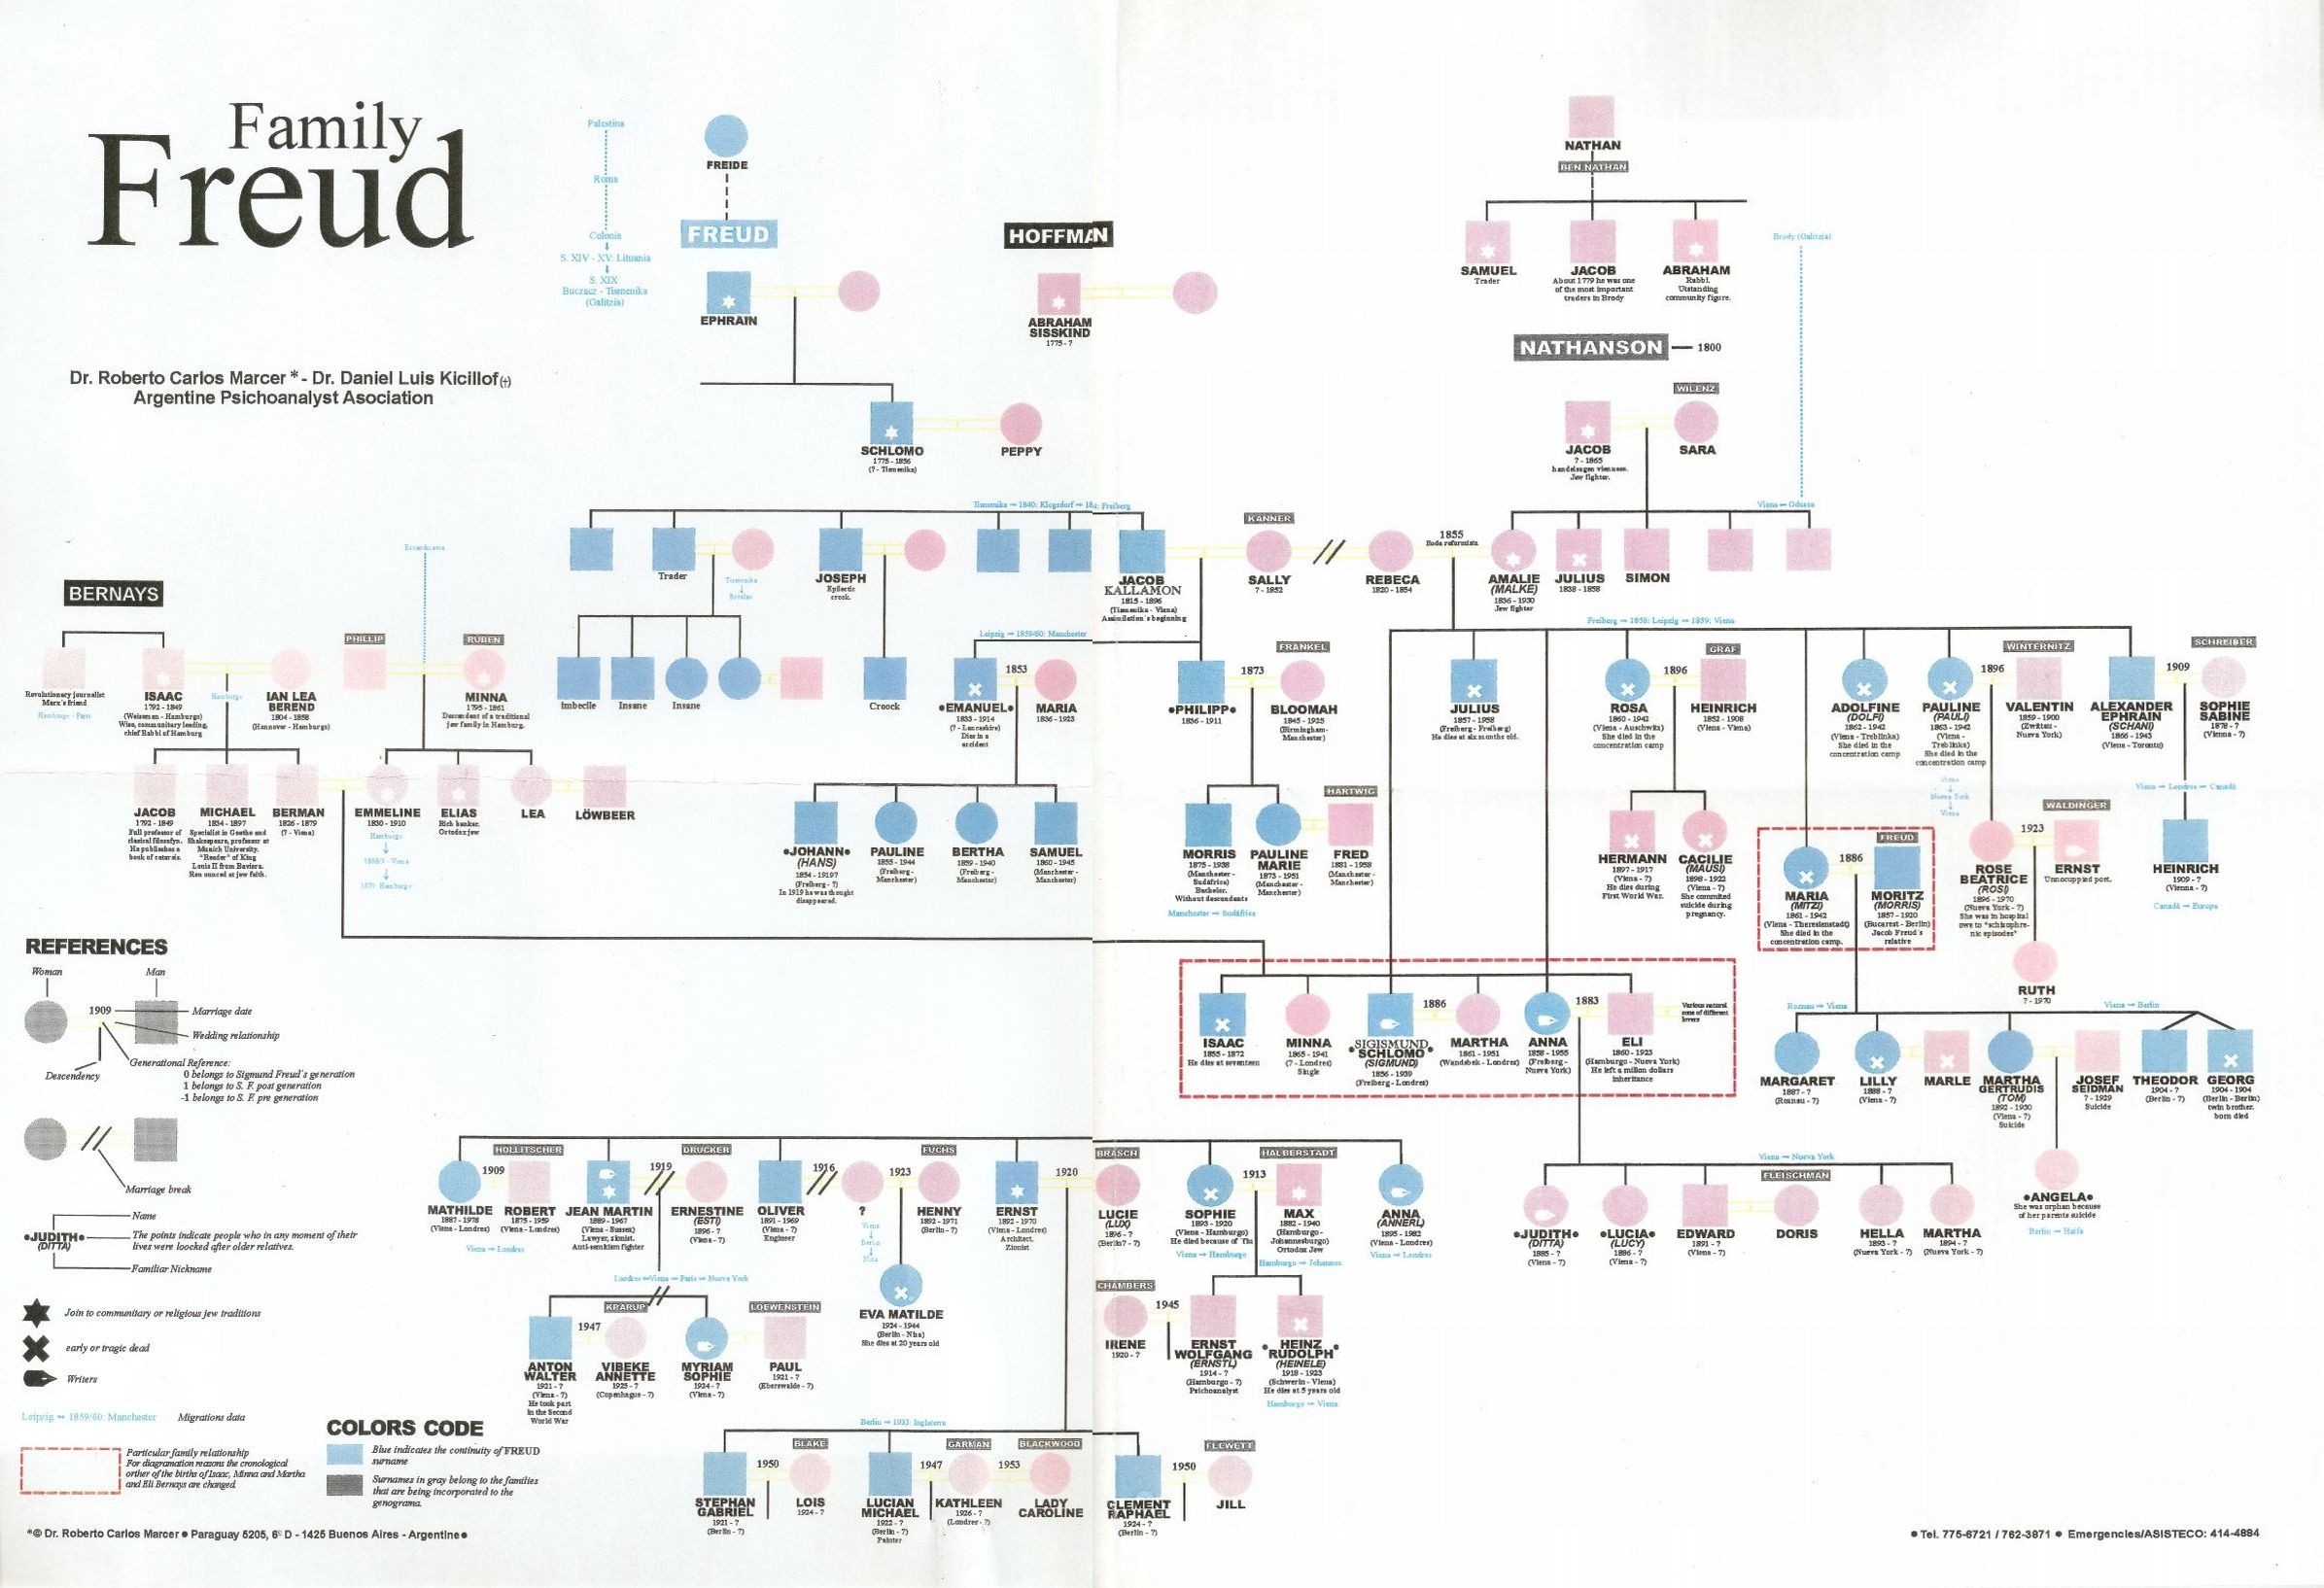 Sigmund Freud family tree full